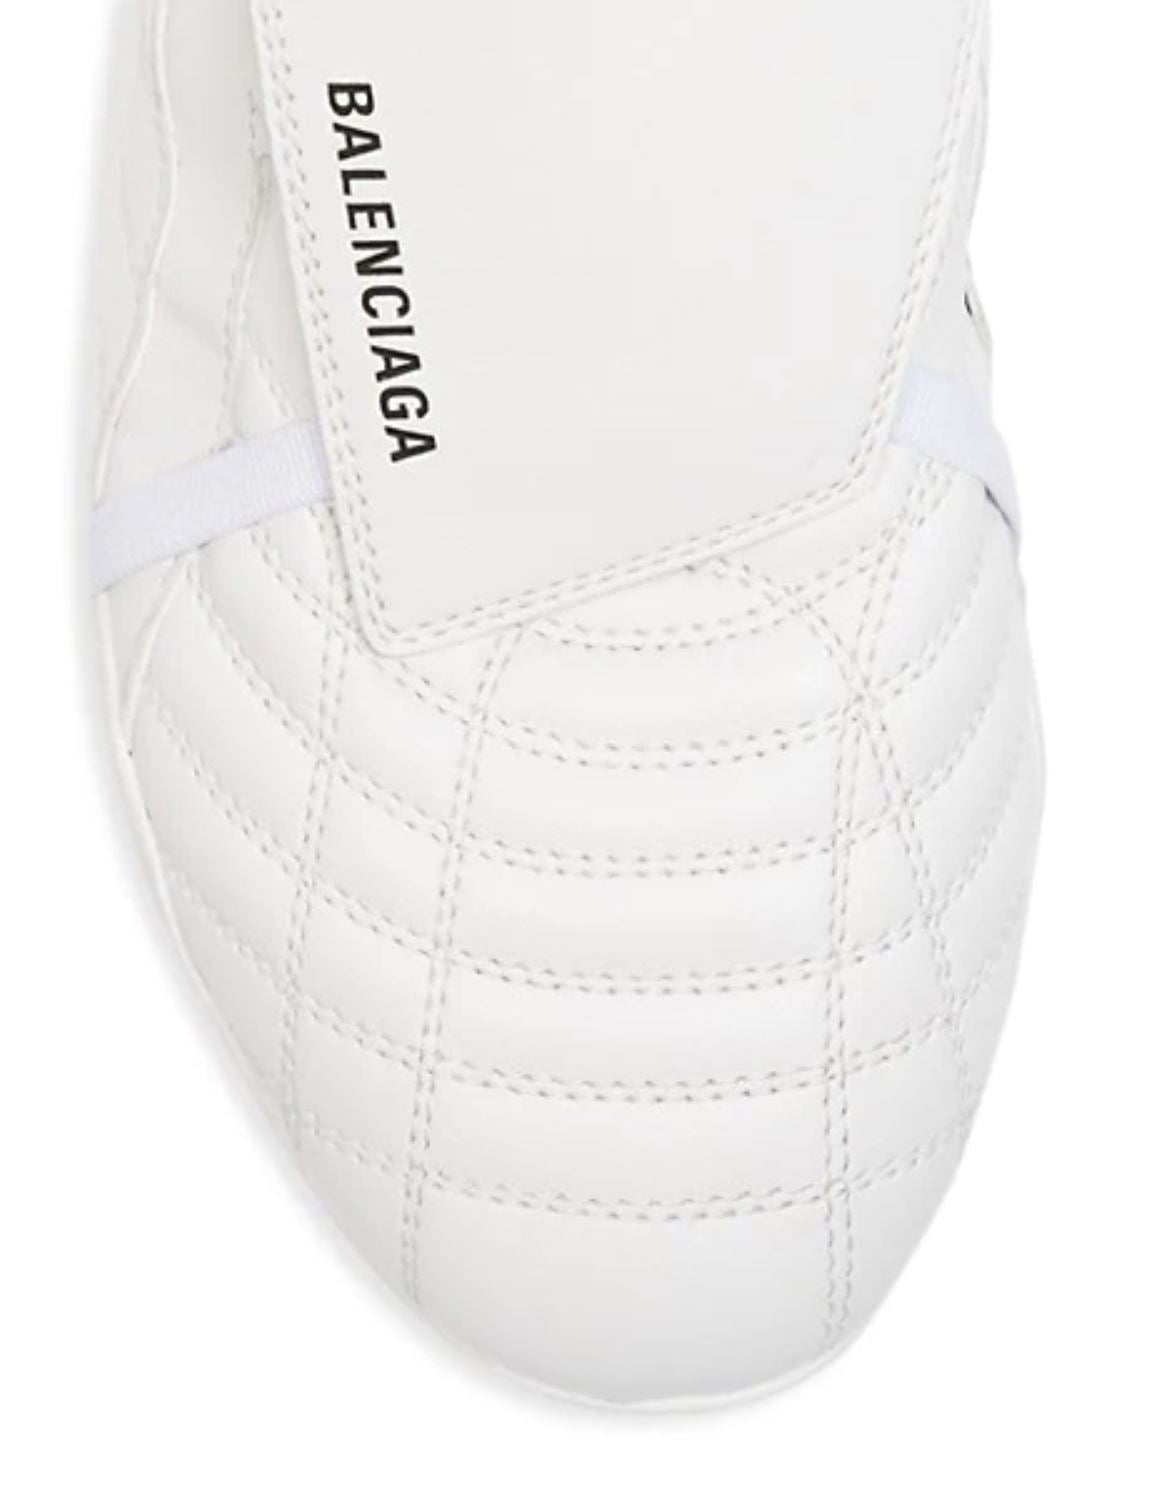 NIB 725 долларов США Balenciaga Женские кожаные кроссовки Socker White 9 США (39 евро) 